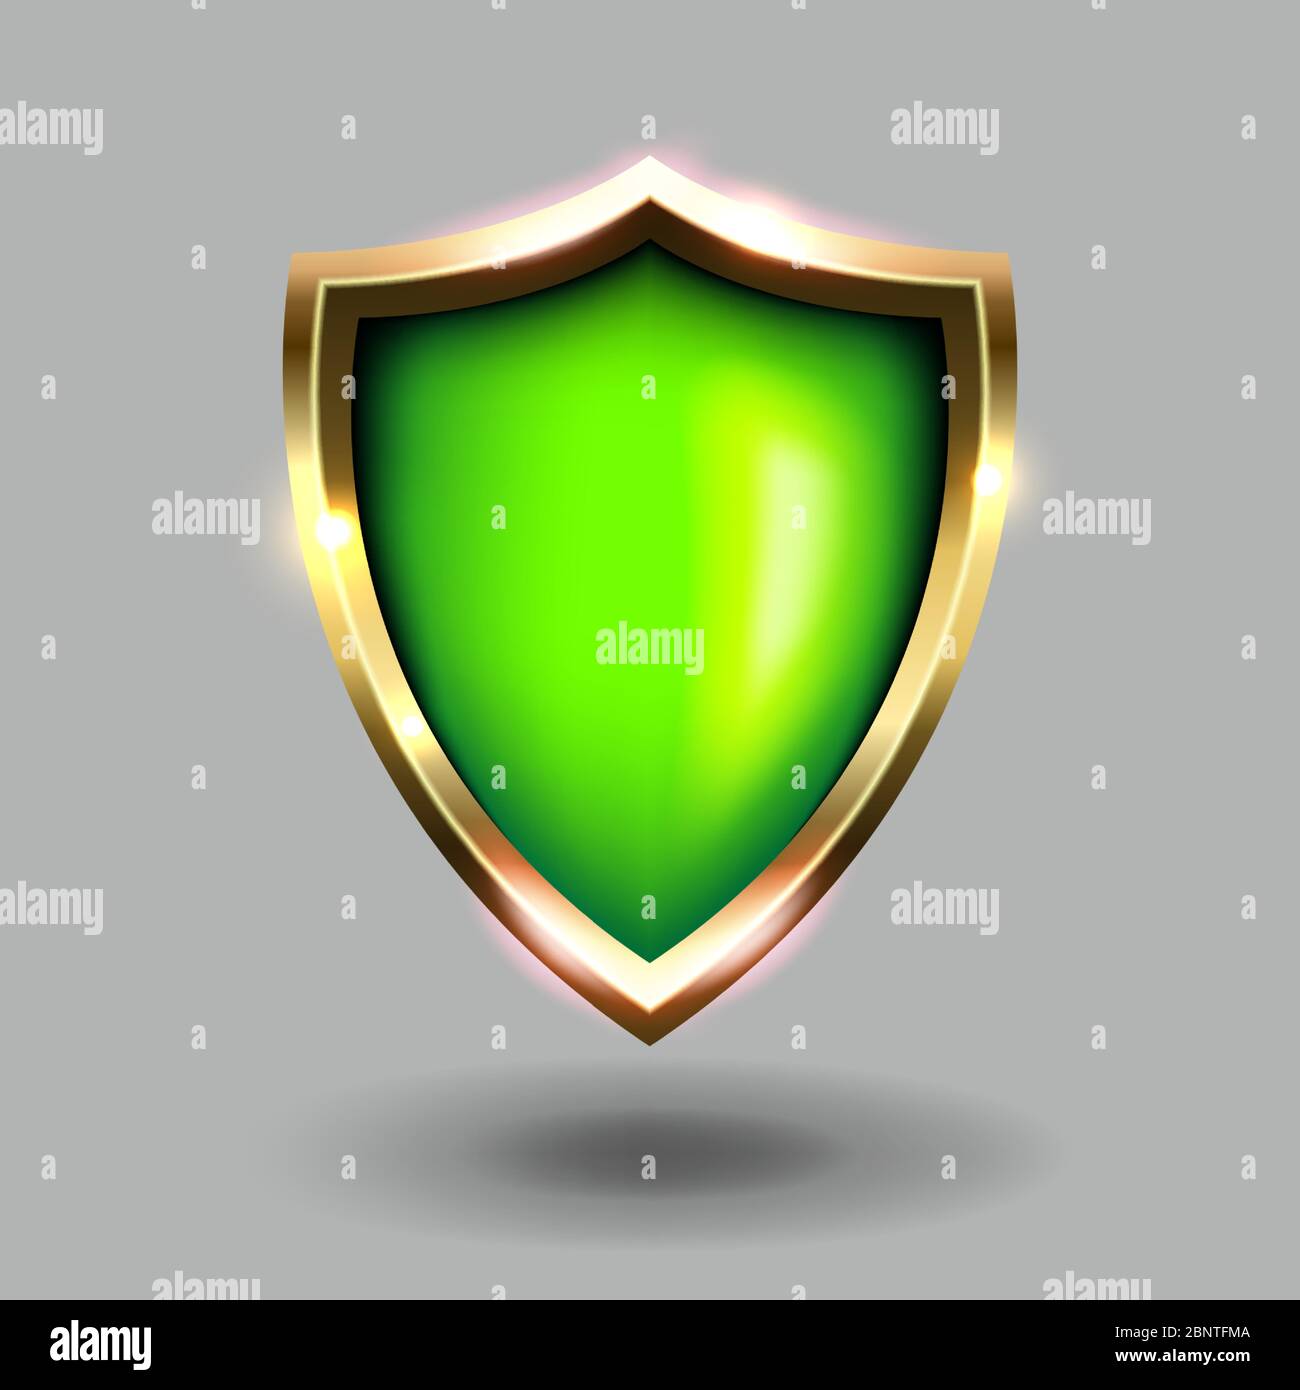 Icona di protezione verde e oro su sfondo grigio. Stemmi verdi illustrazioni vettoriali realistiche. Simbolo di sicurezza e protezione Illustrazione Vettoriale